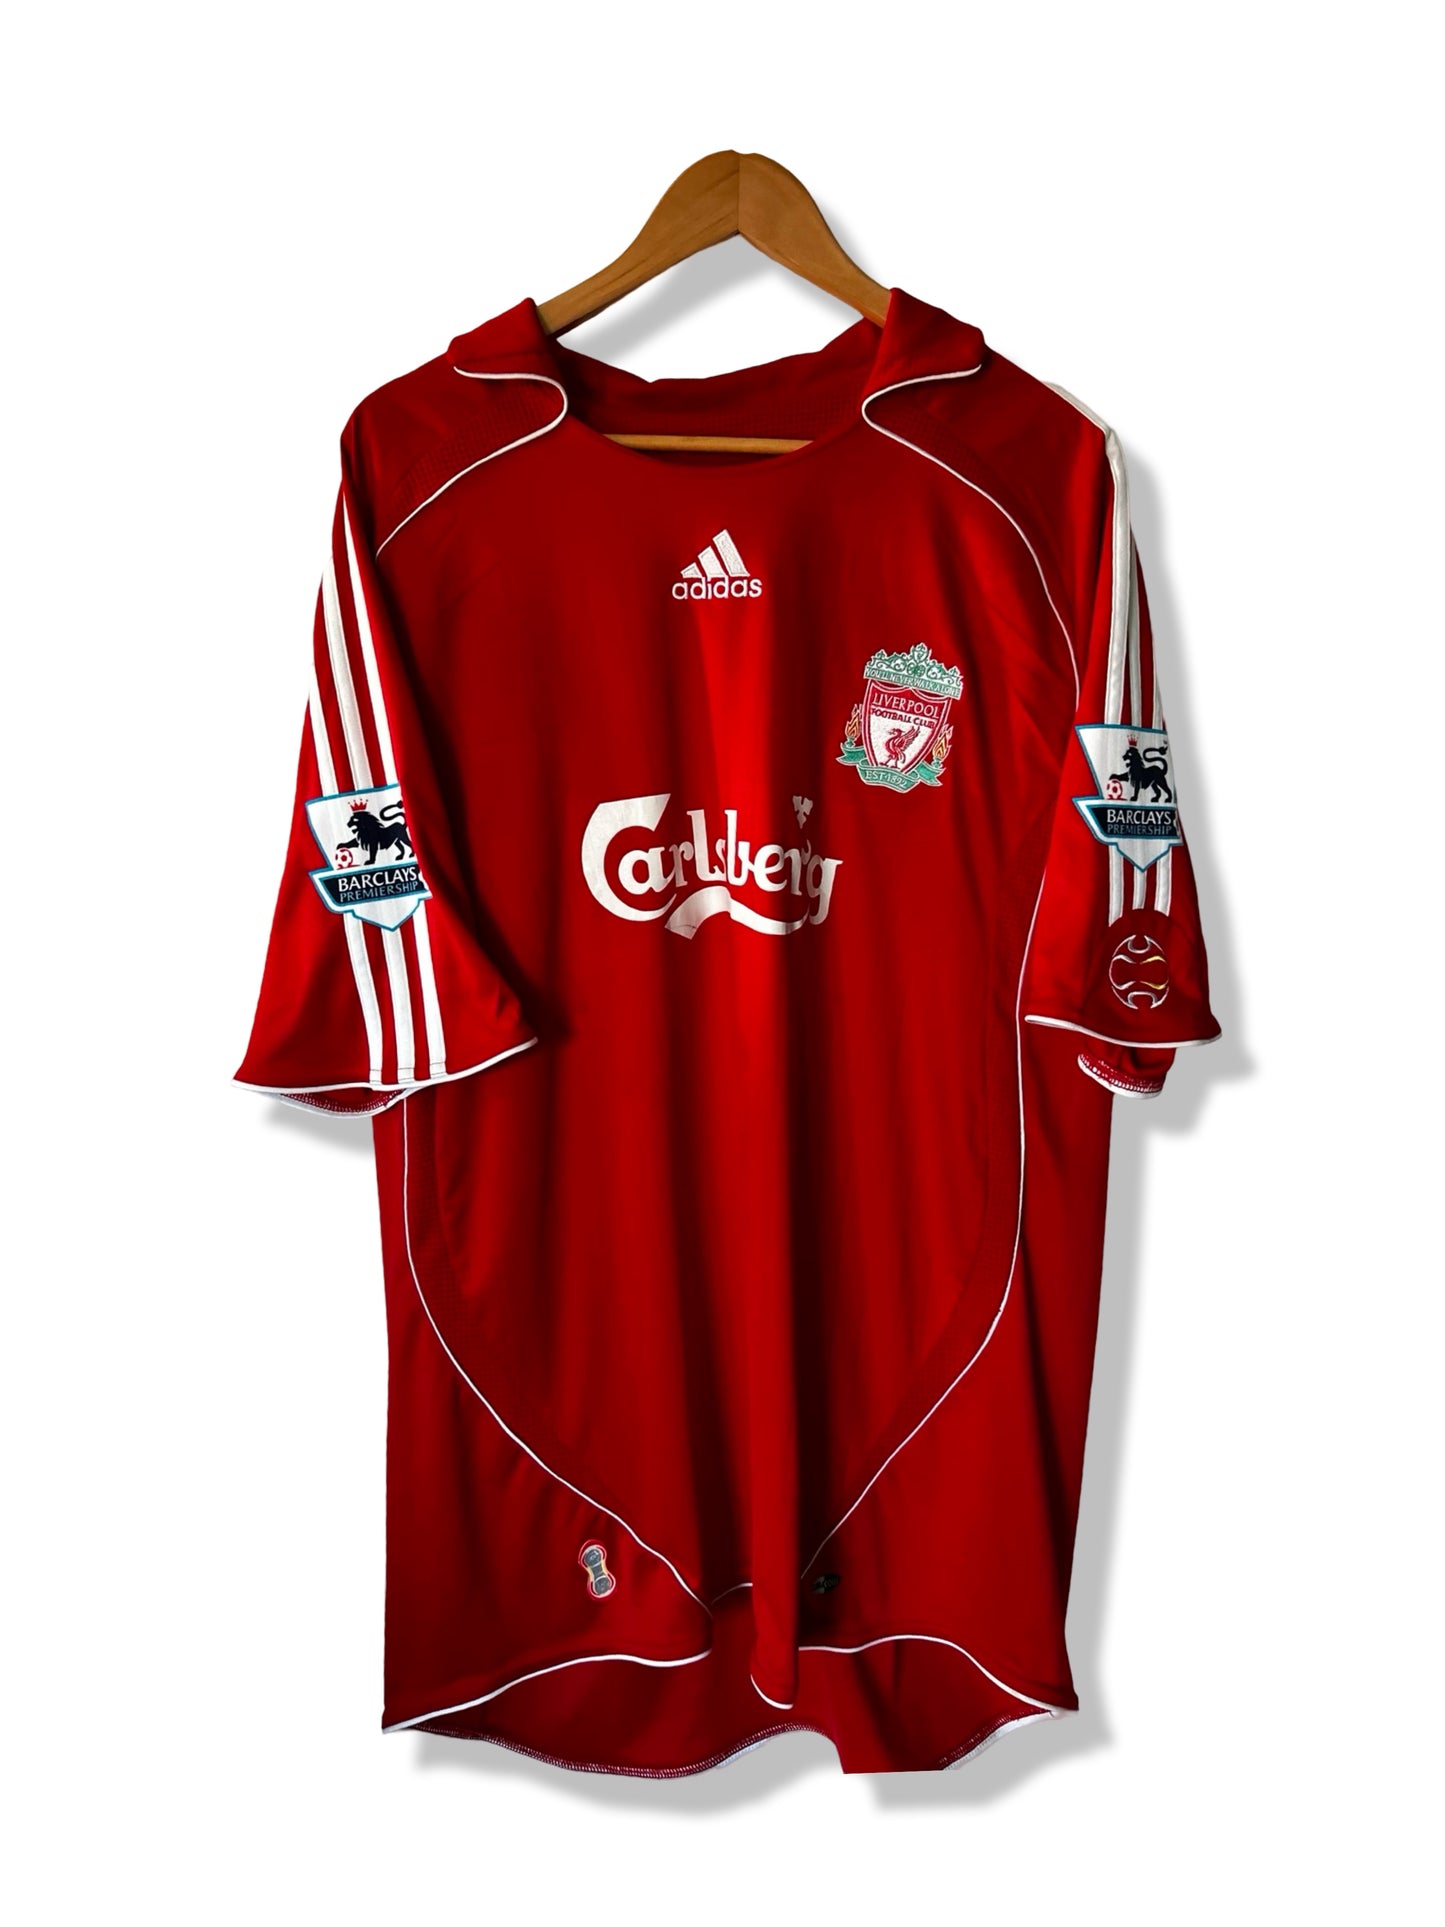 Liverpool FC 2006-08 Home Shirt, #8 Steven Gerrard - XL